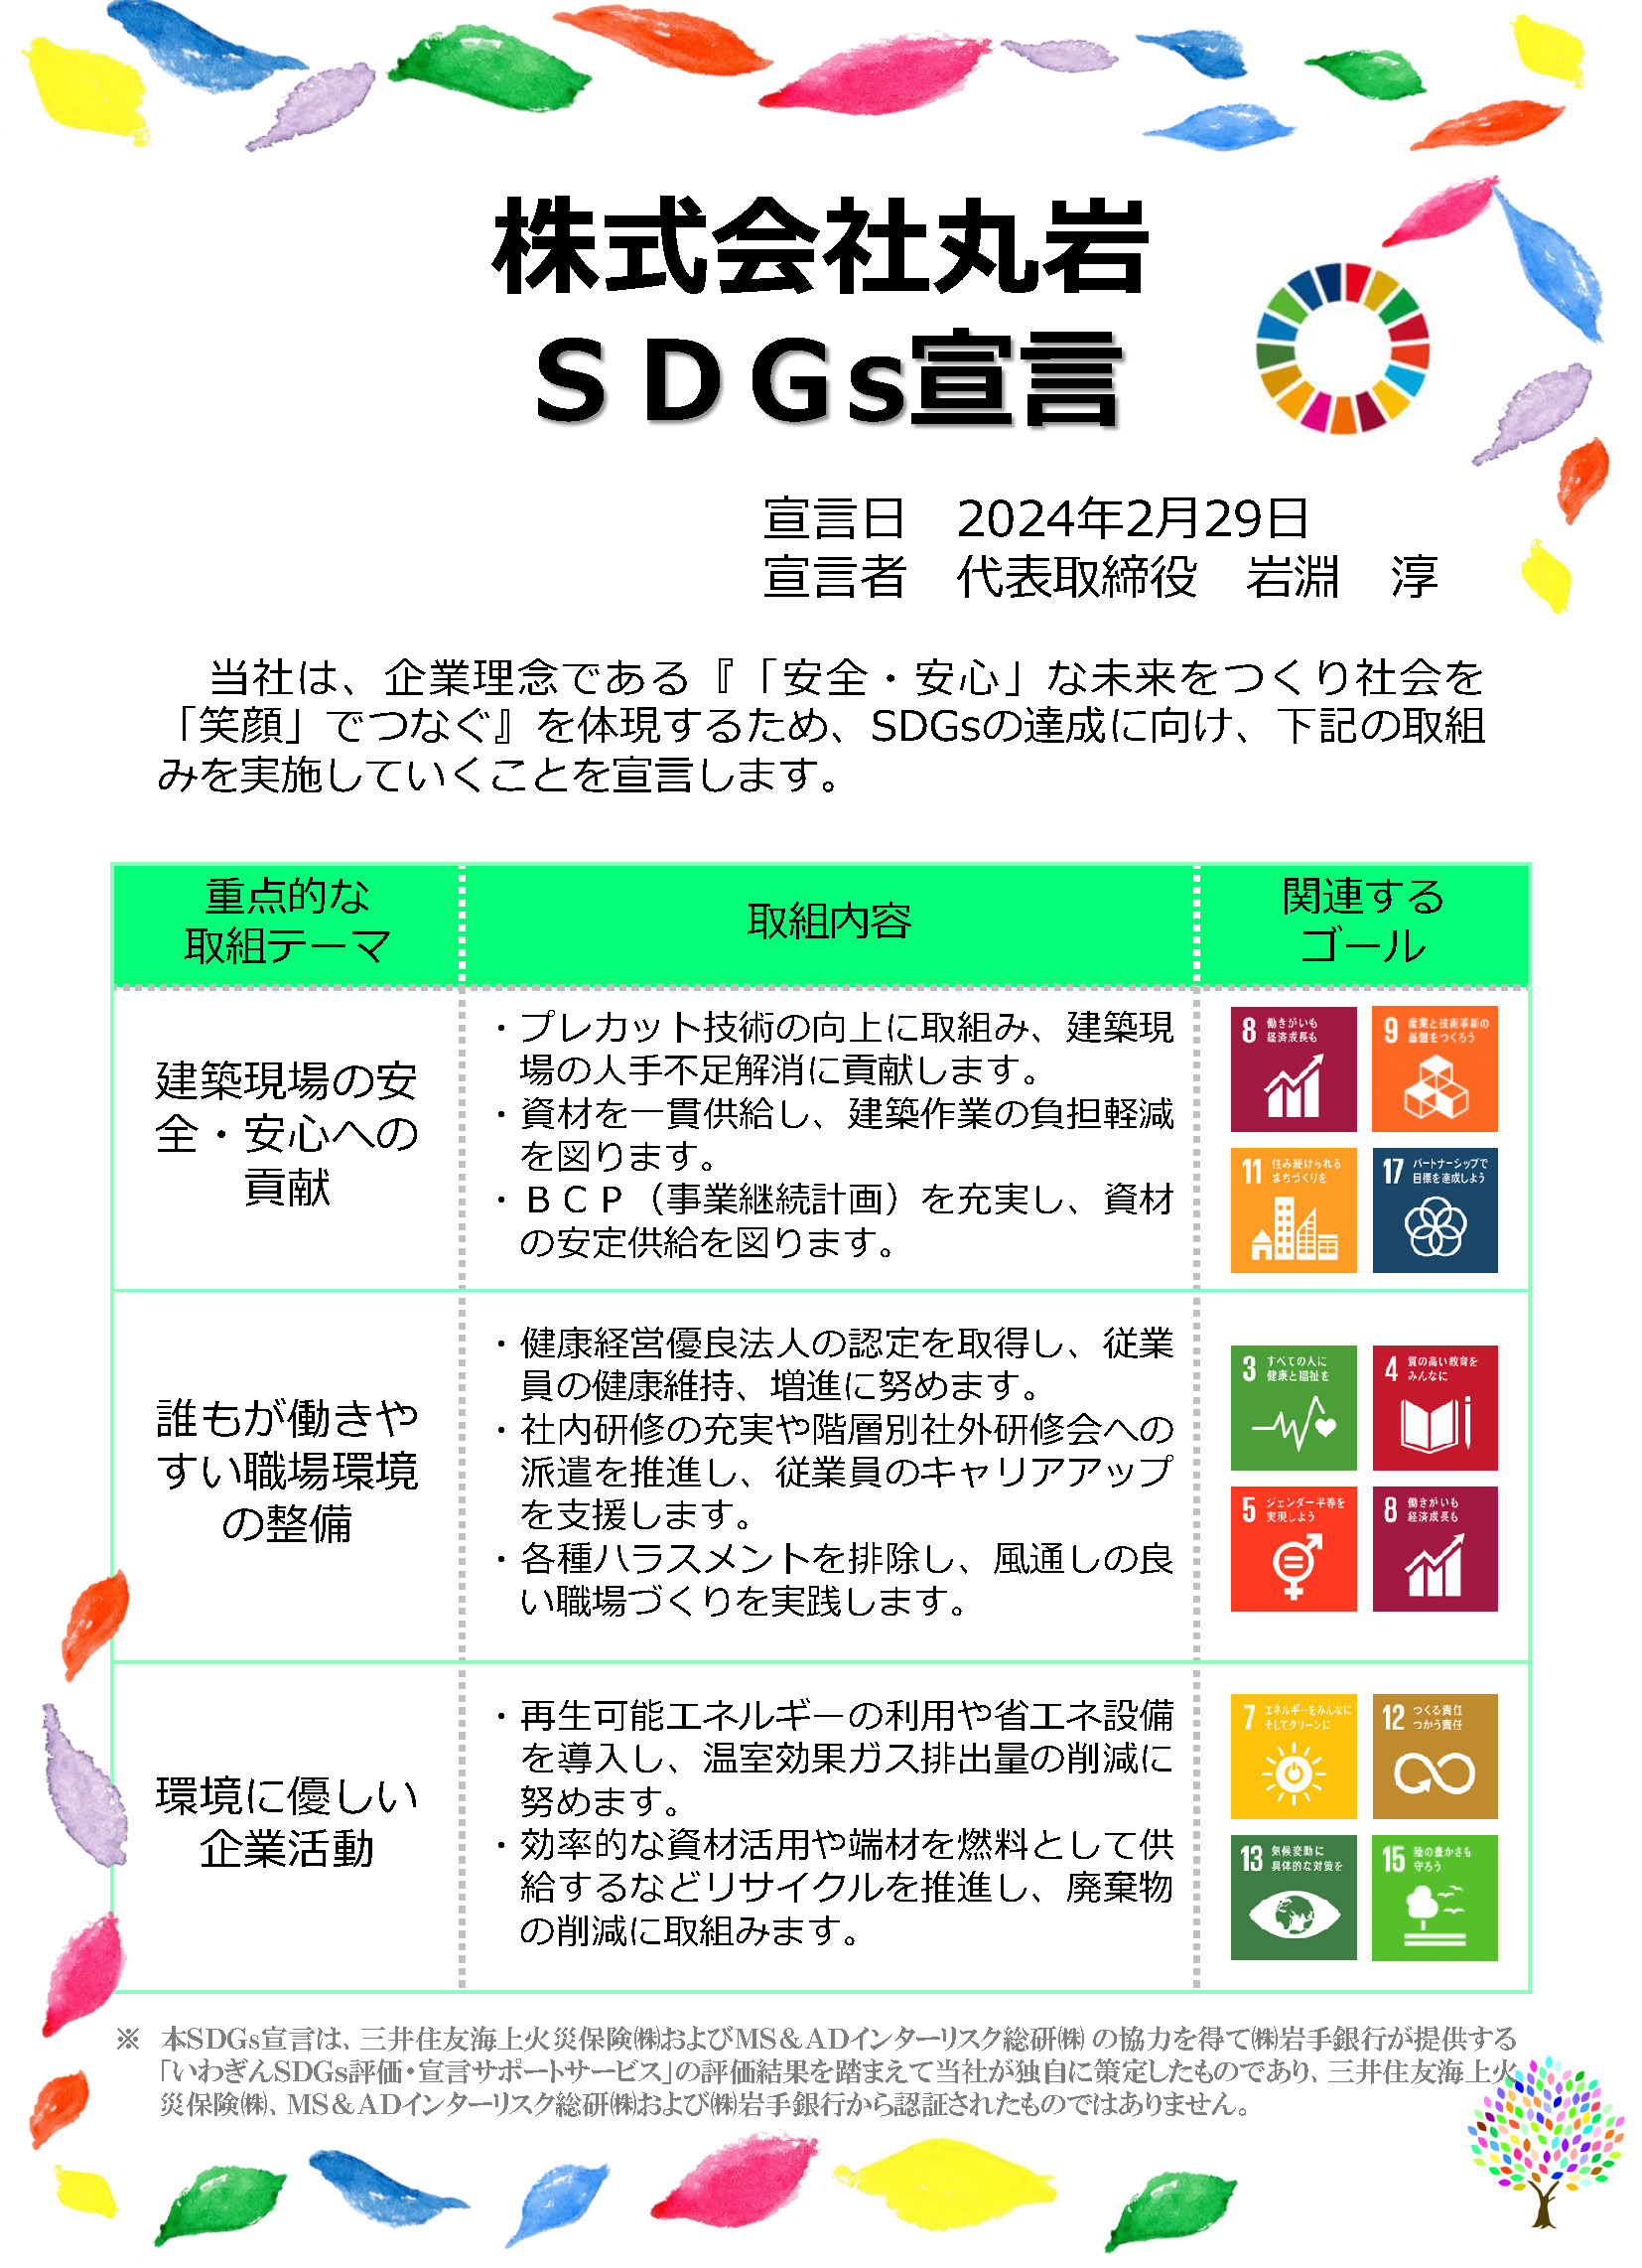 株式会社丸岩 SDGs宣言